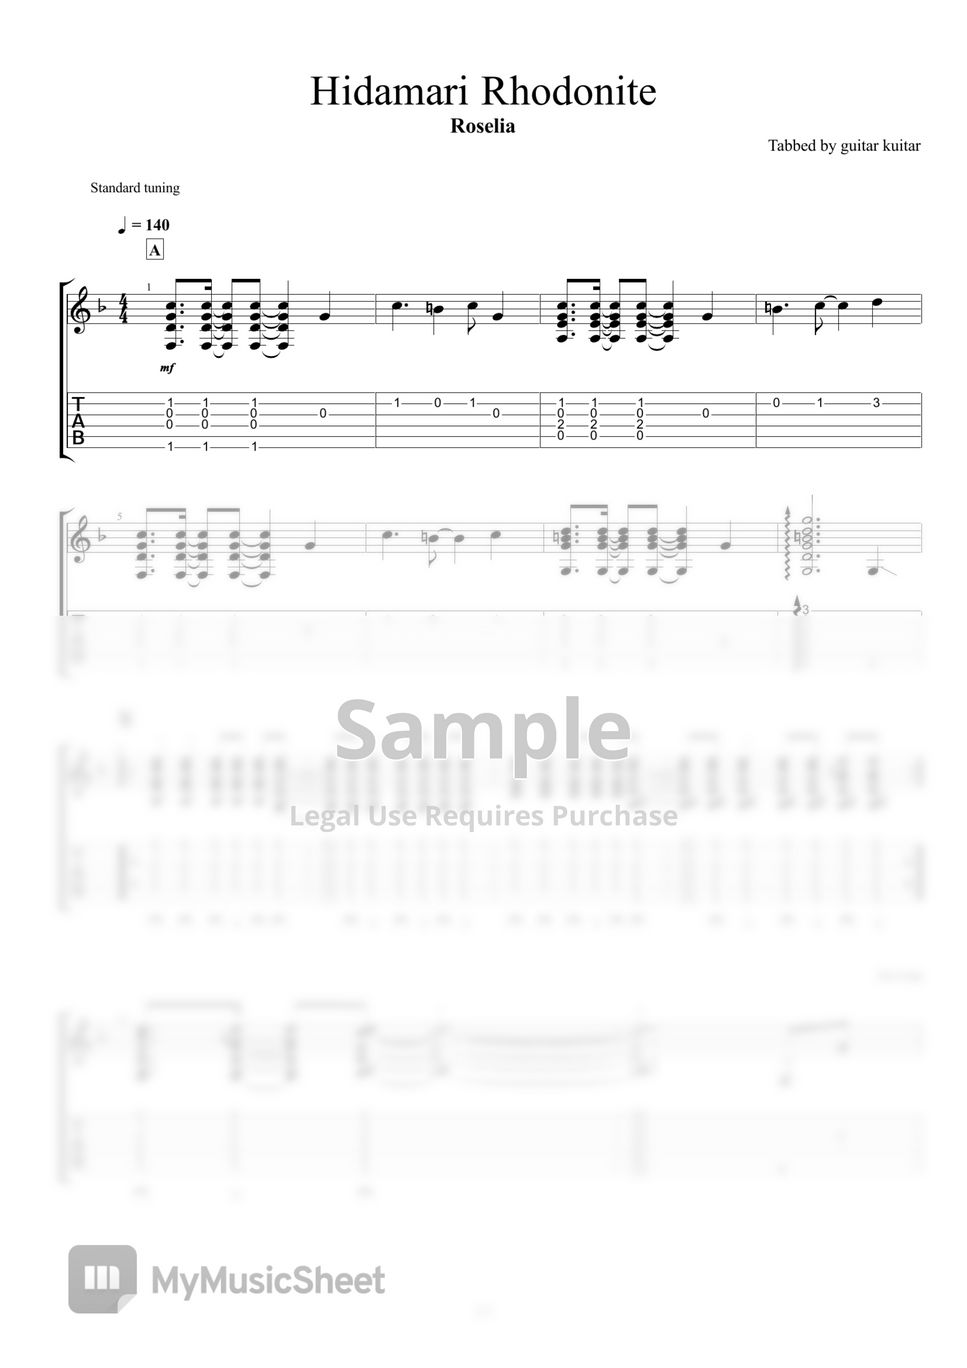 Roselia - Hidamari Rhodonite (Guitar TAB) by guitar kuitar